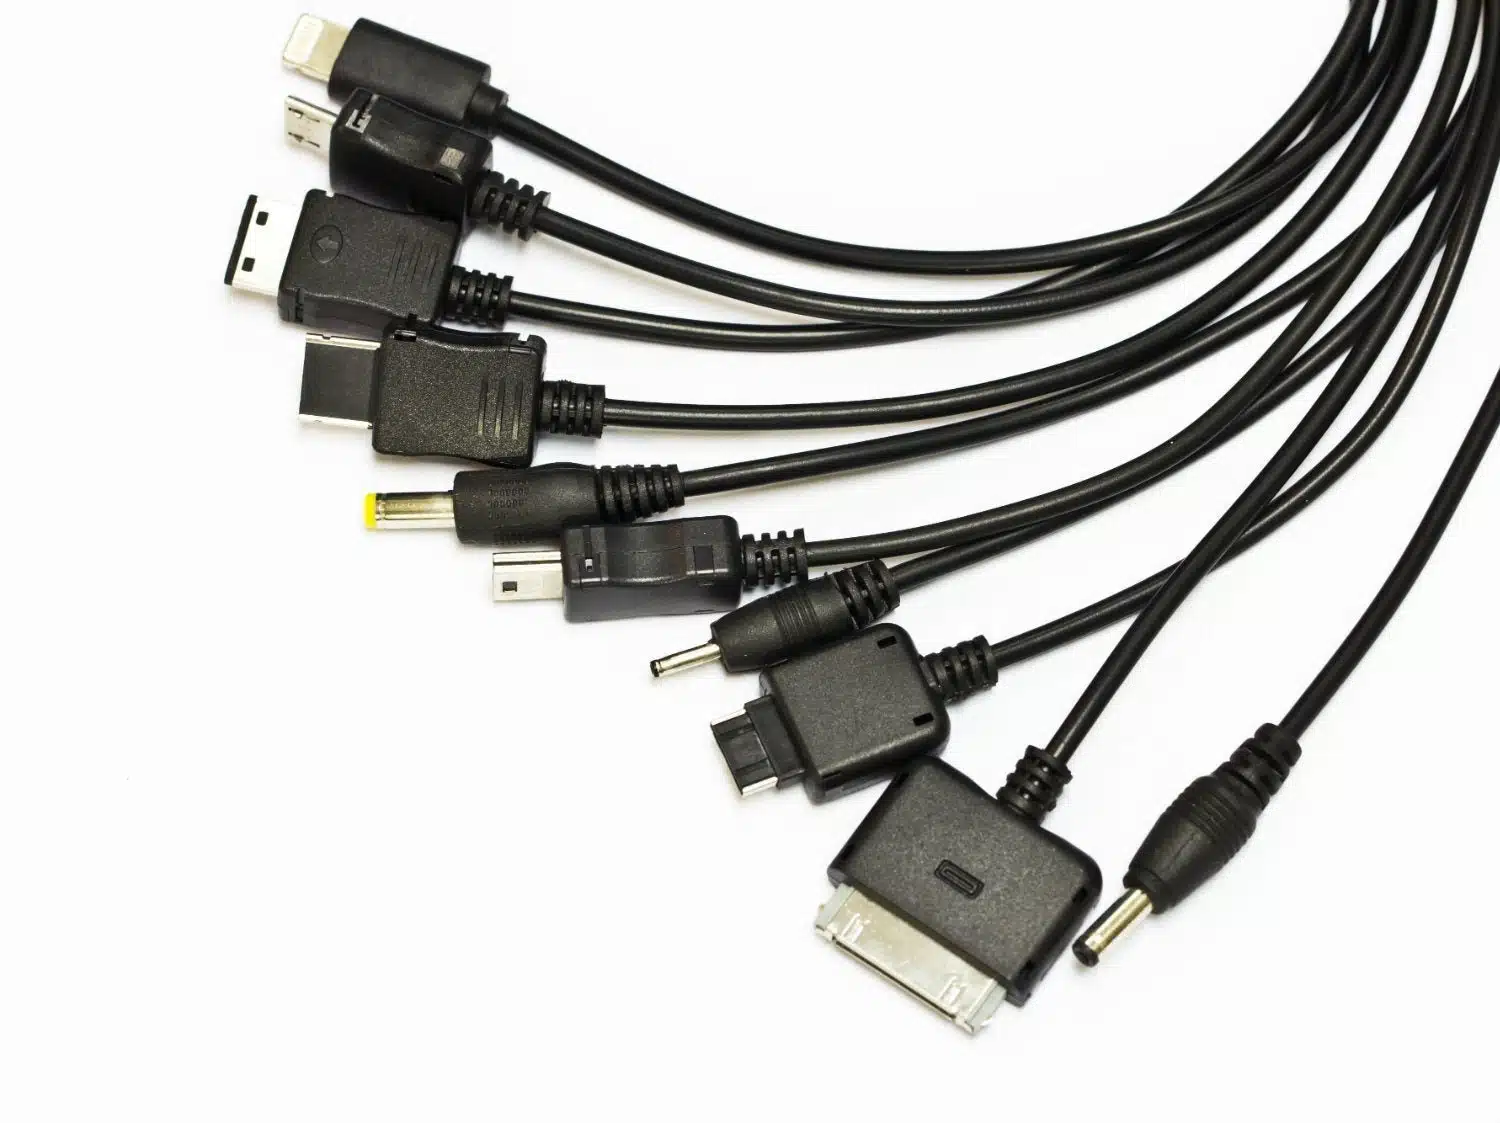 Comment bien choisir votre câble data USB ?